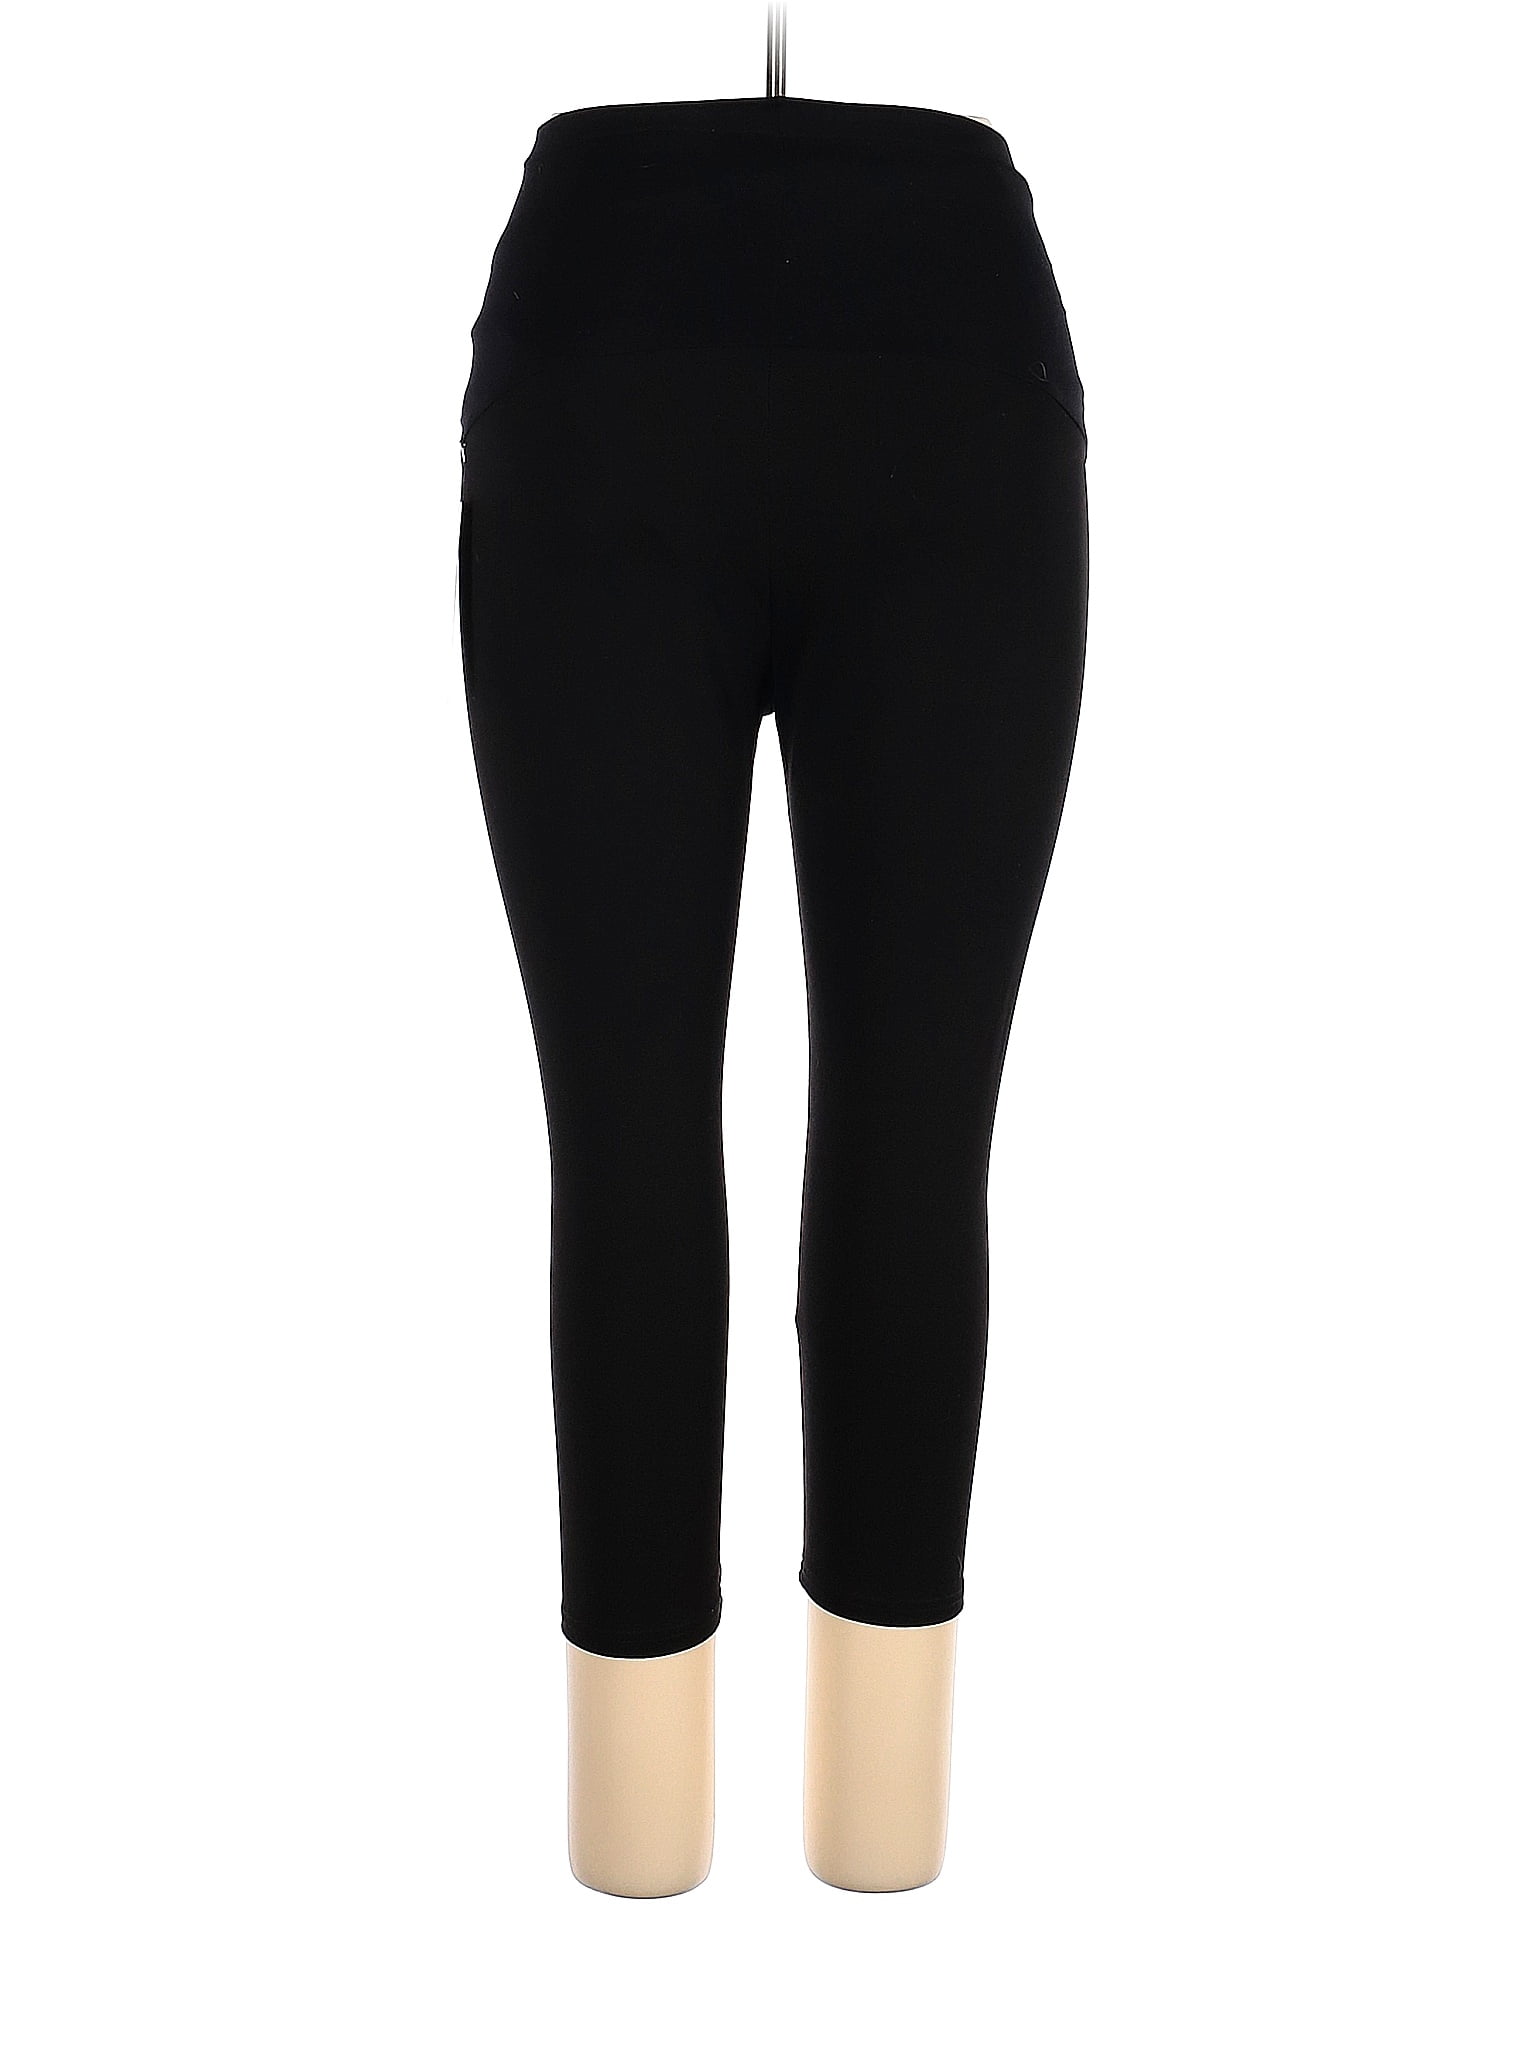 Sandpiper, Pants & Jumpsuits, Sandpiper Womens Black Capri Pants Size 22